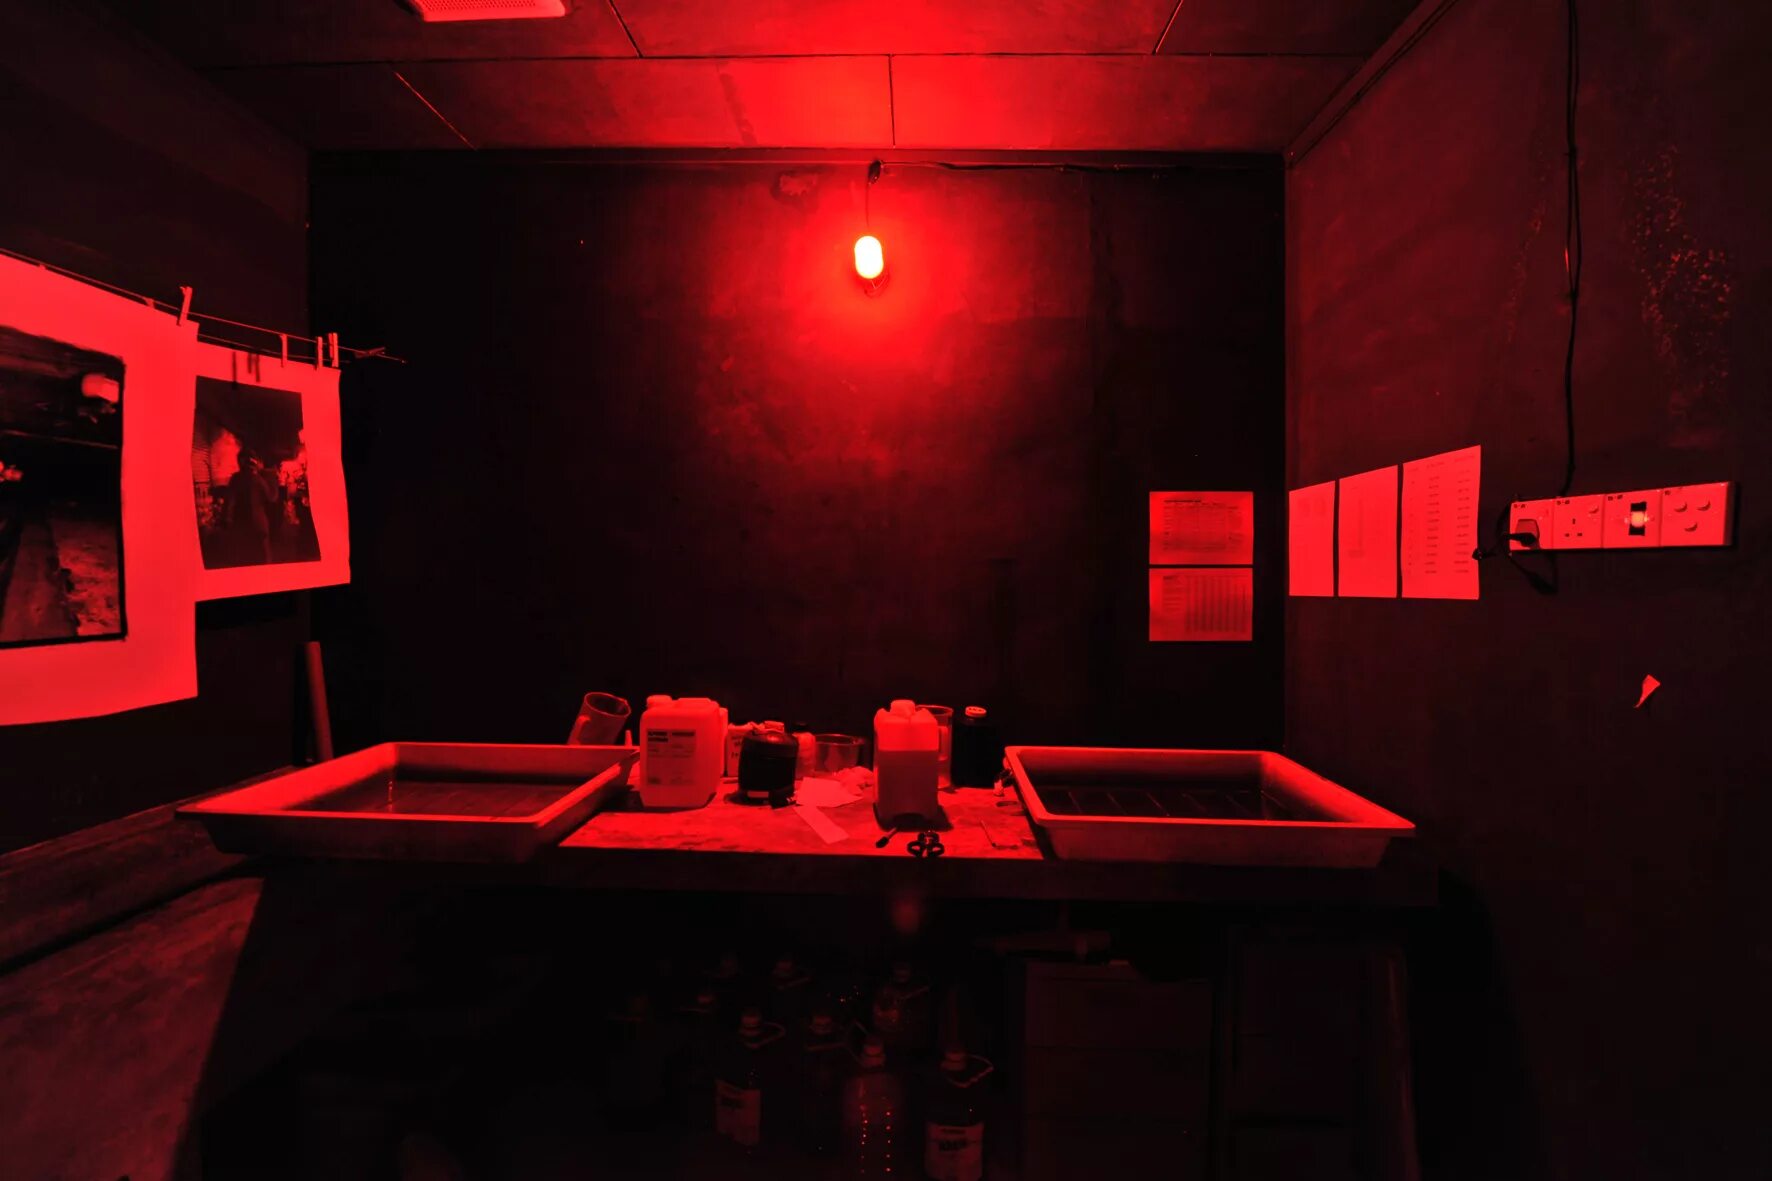 Red Room" красная комната  (1999) ужасы ". Комната для проявки пленки. Лаборатория для проявки пленки. Комната для проявления фотографий. Проявляющие картинки